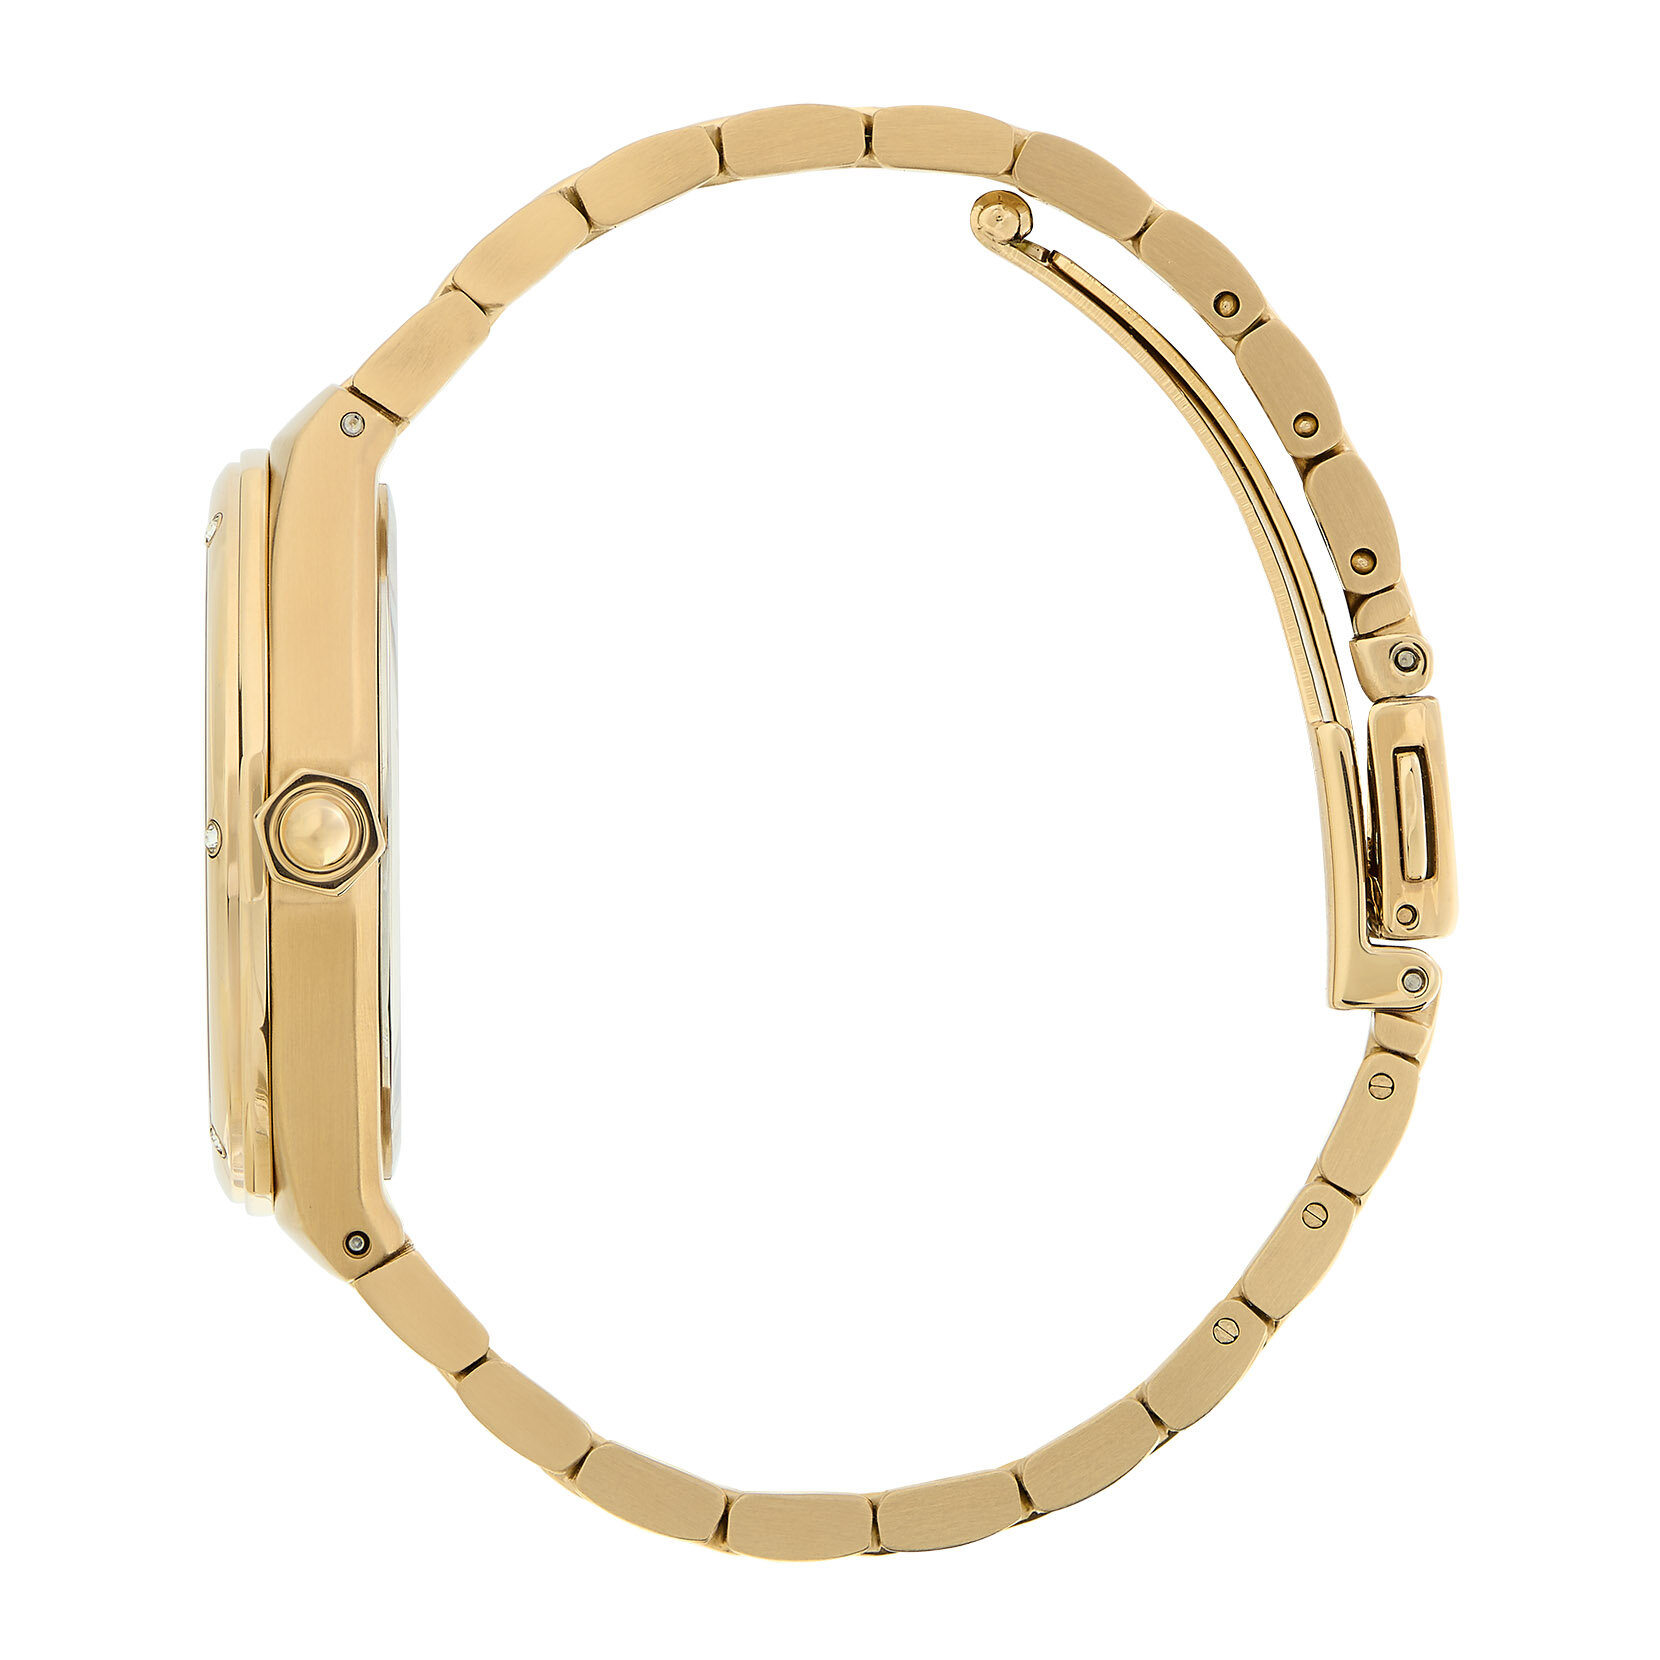 33mm Hexa Green & Gold Bracelet Watch